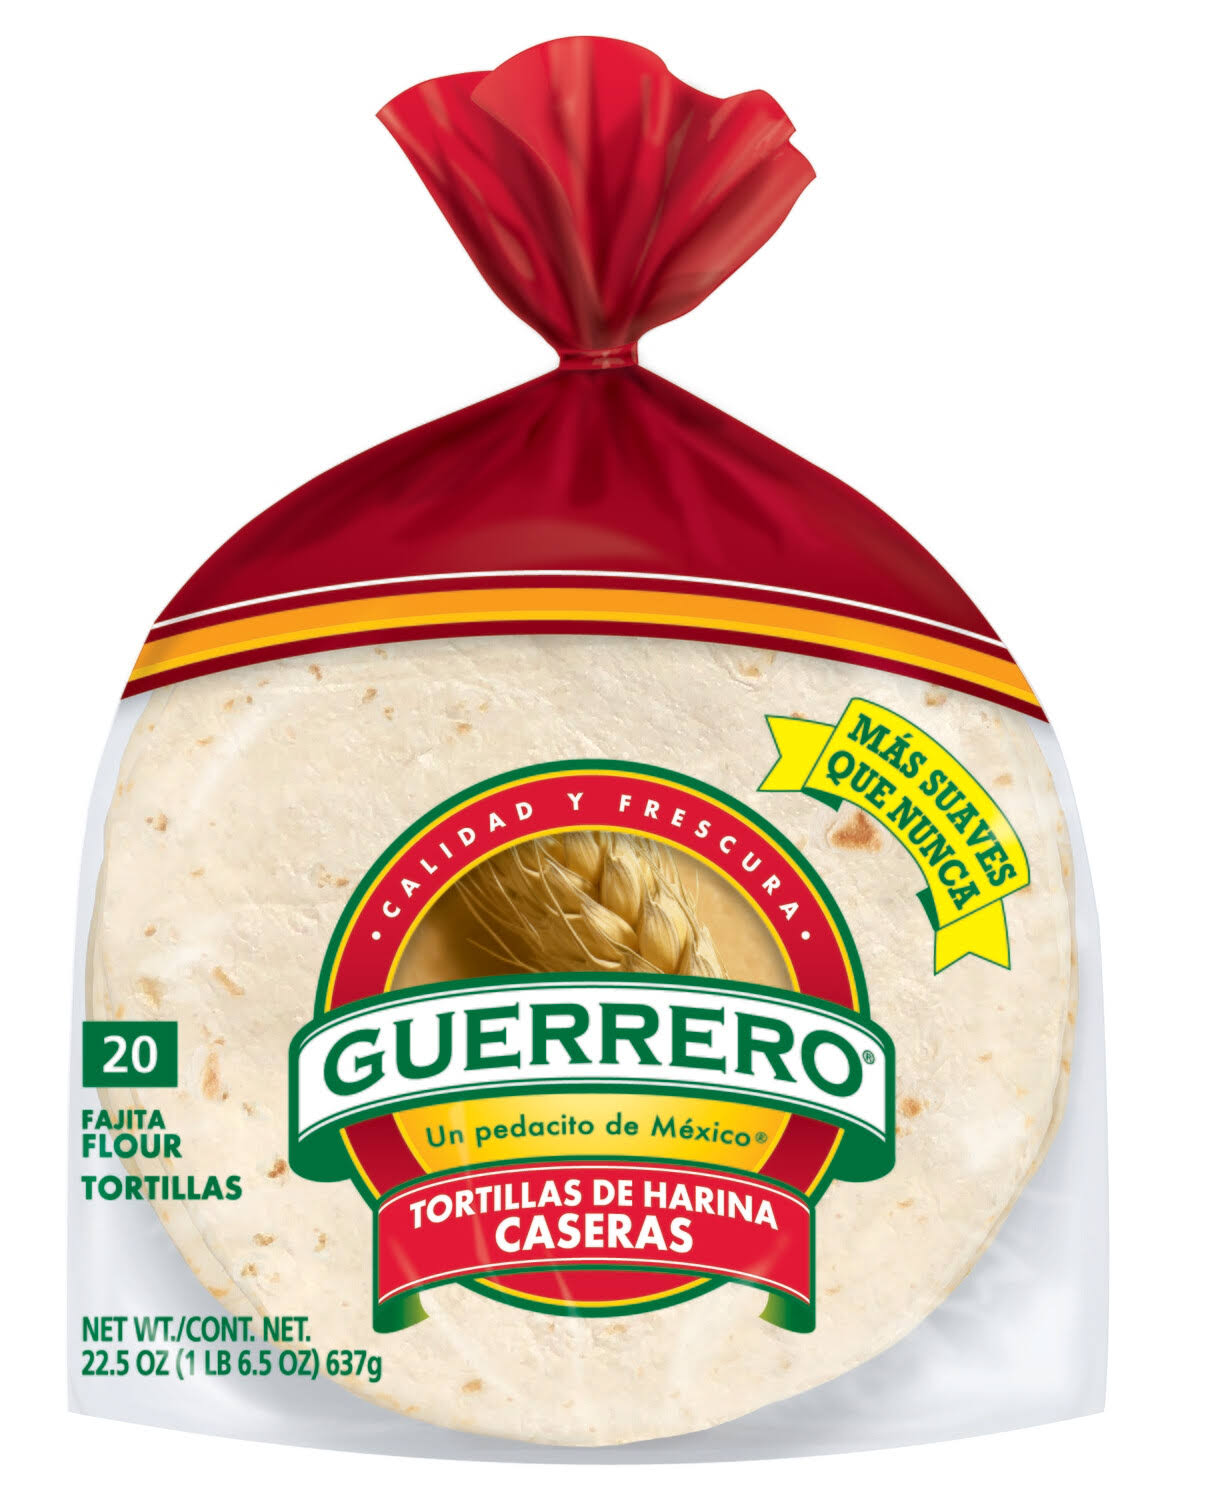 Guerrero Flour Caseras Tortillas - 20ct